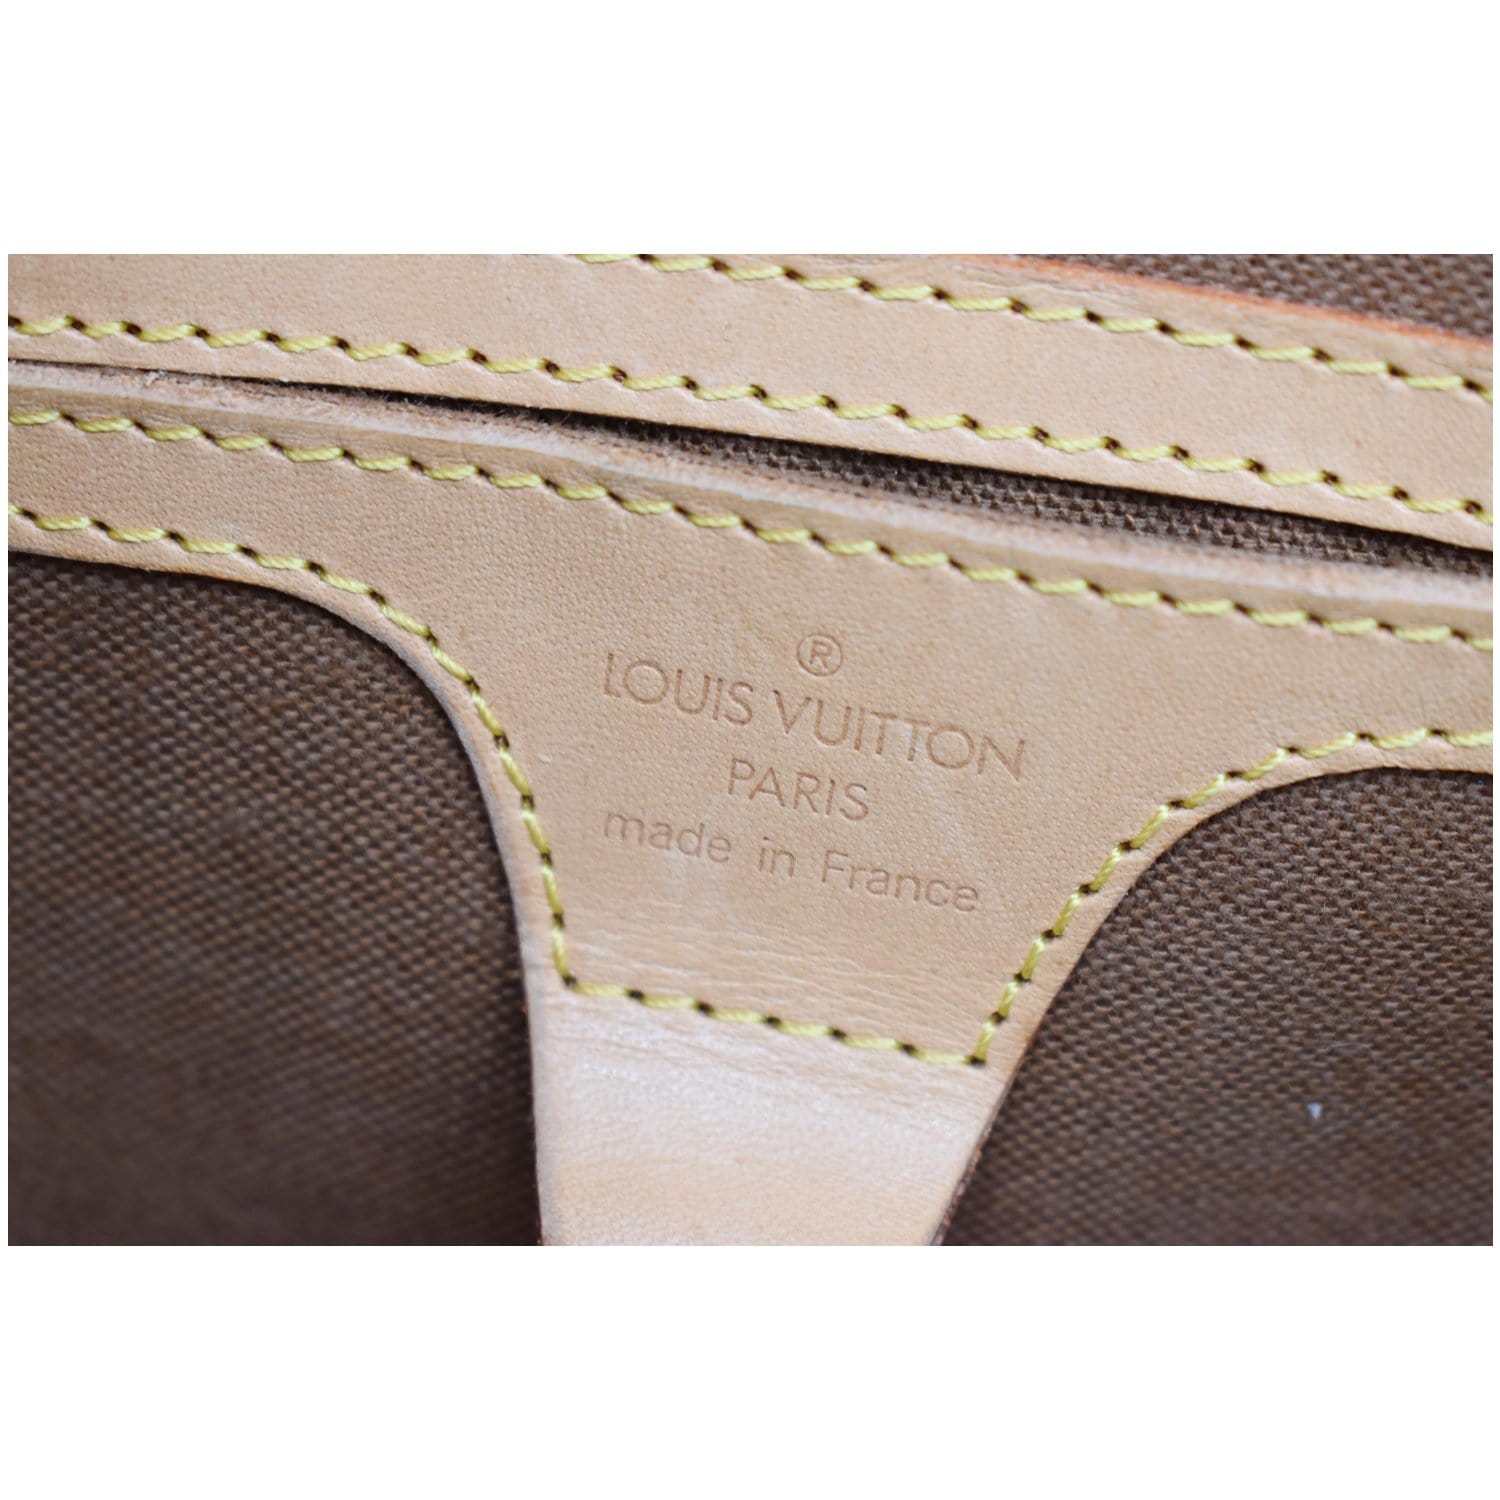 Louis Vuitton Ellipse PM Monogram Hand Bag - The  Community